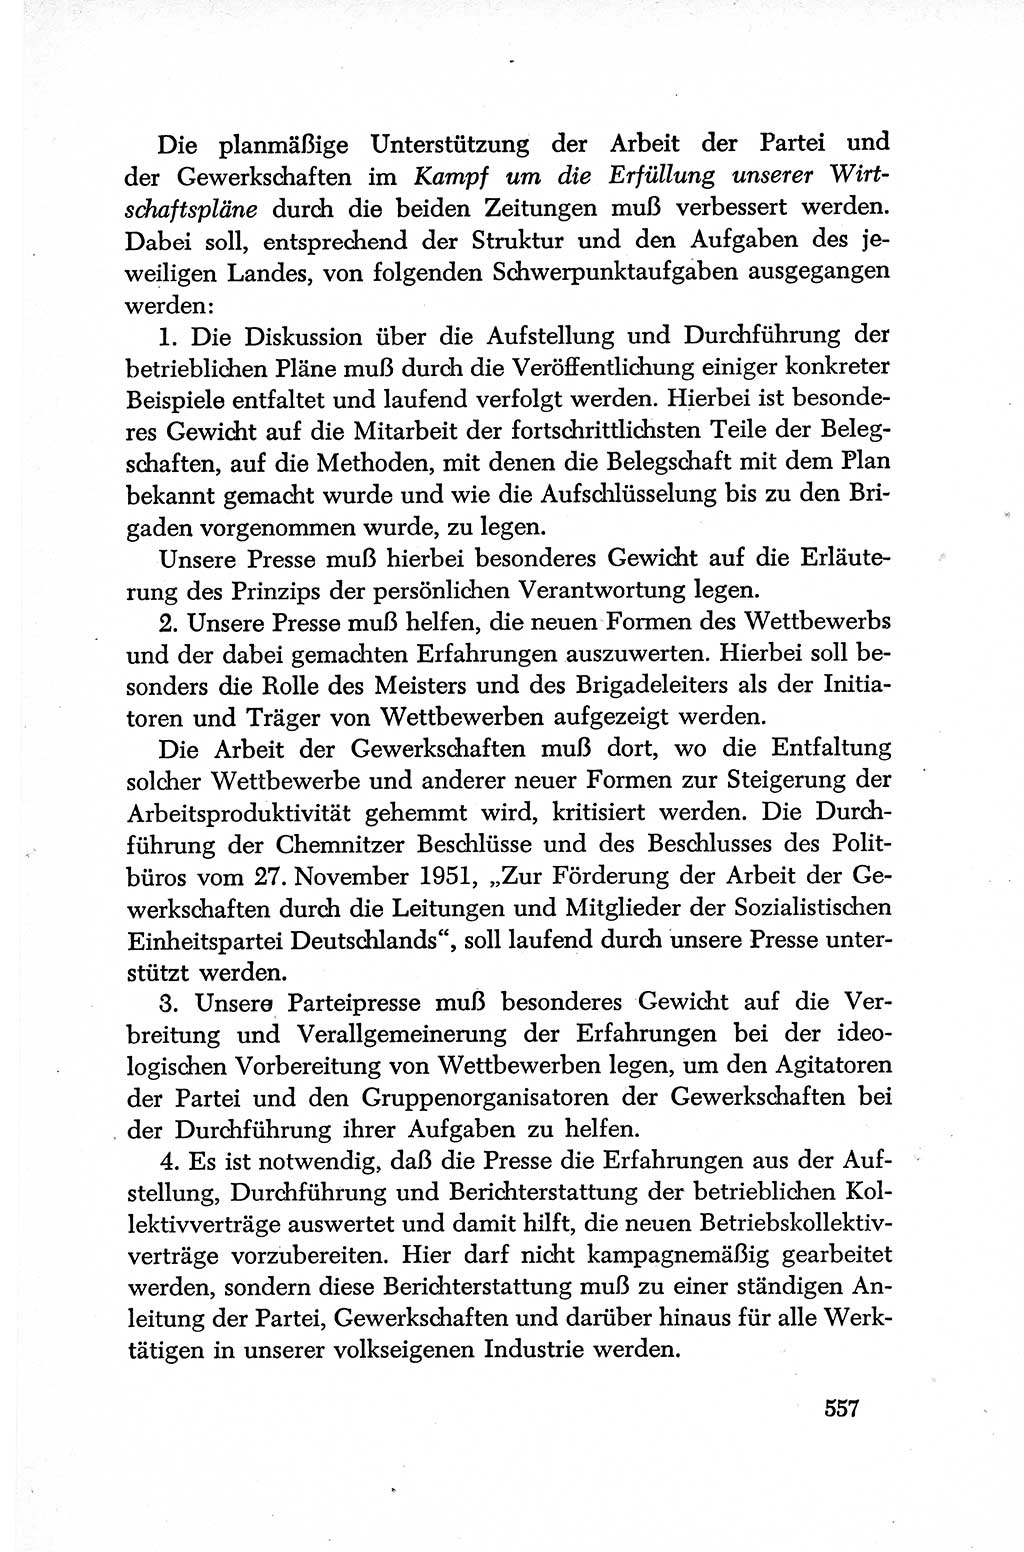 Dokumente der Sozialistischen Einheitspartei Deutschlands (SED) [Deutsche Demokratische Republik (DDR)] 1952-1953, Seite 557 (Dok. SED DDR 1952-1953, S. 557)